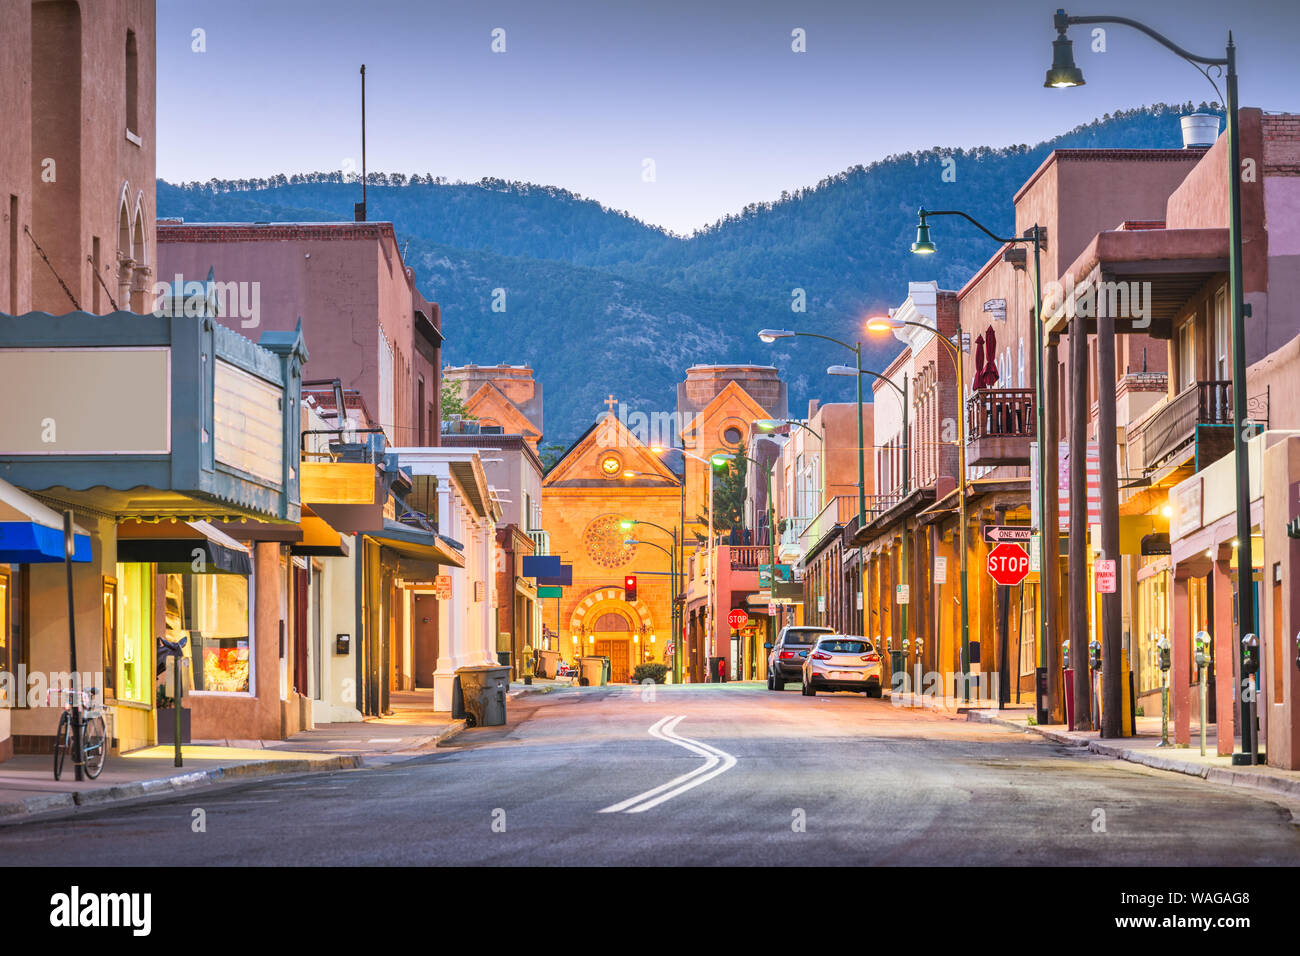 Santa Fe, New Mexico, USA Stock Photo